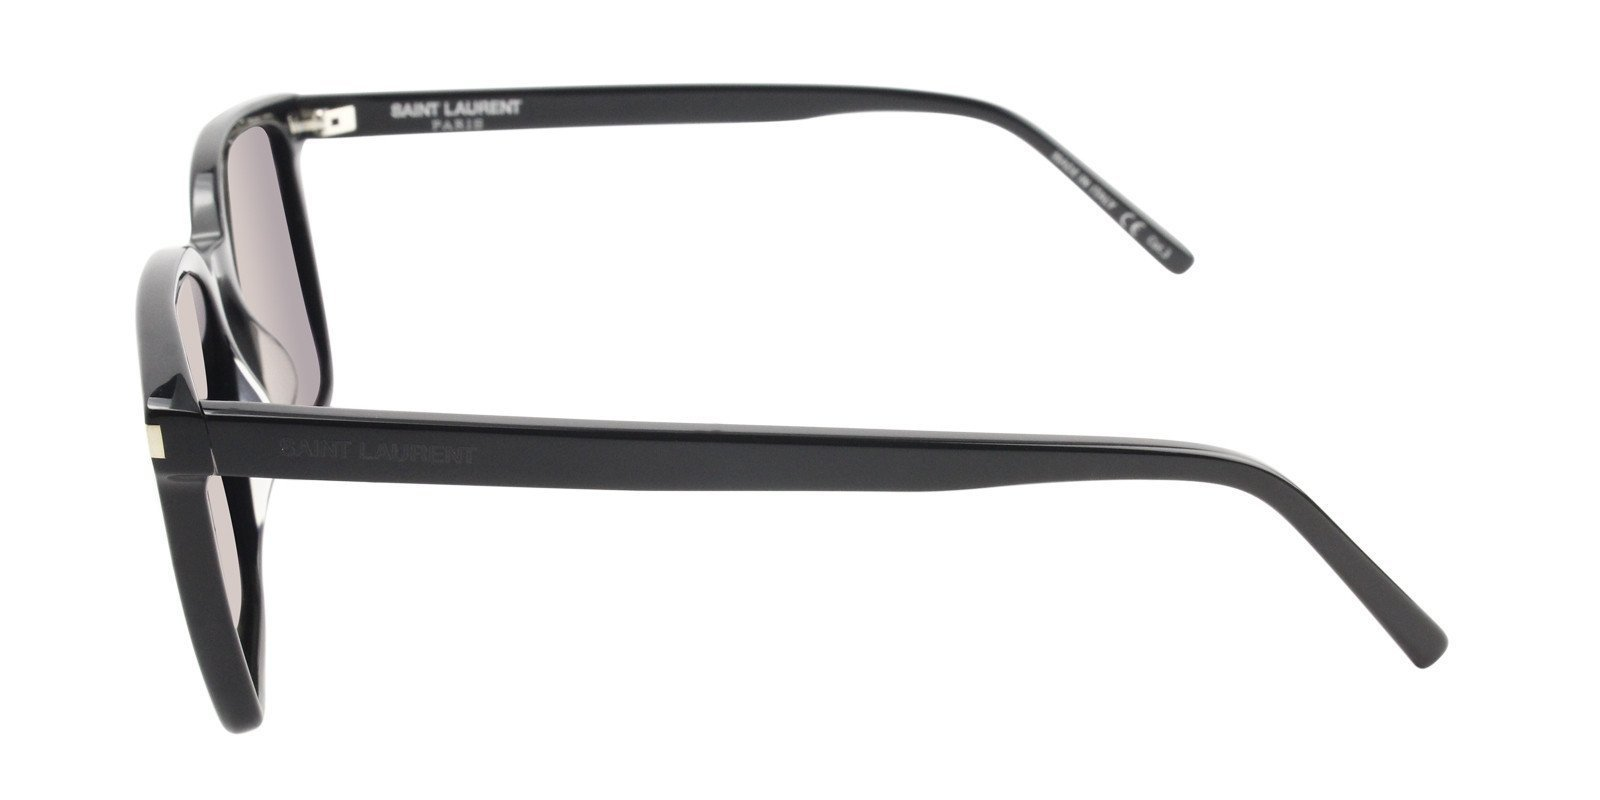 Lenny Kravitz Wearing Saint Laurent SL93 Sunglasses – Designer Eyes